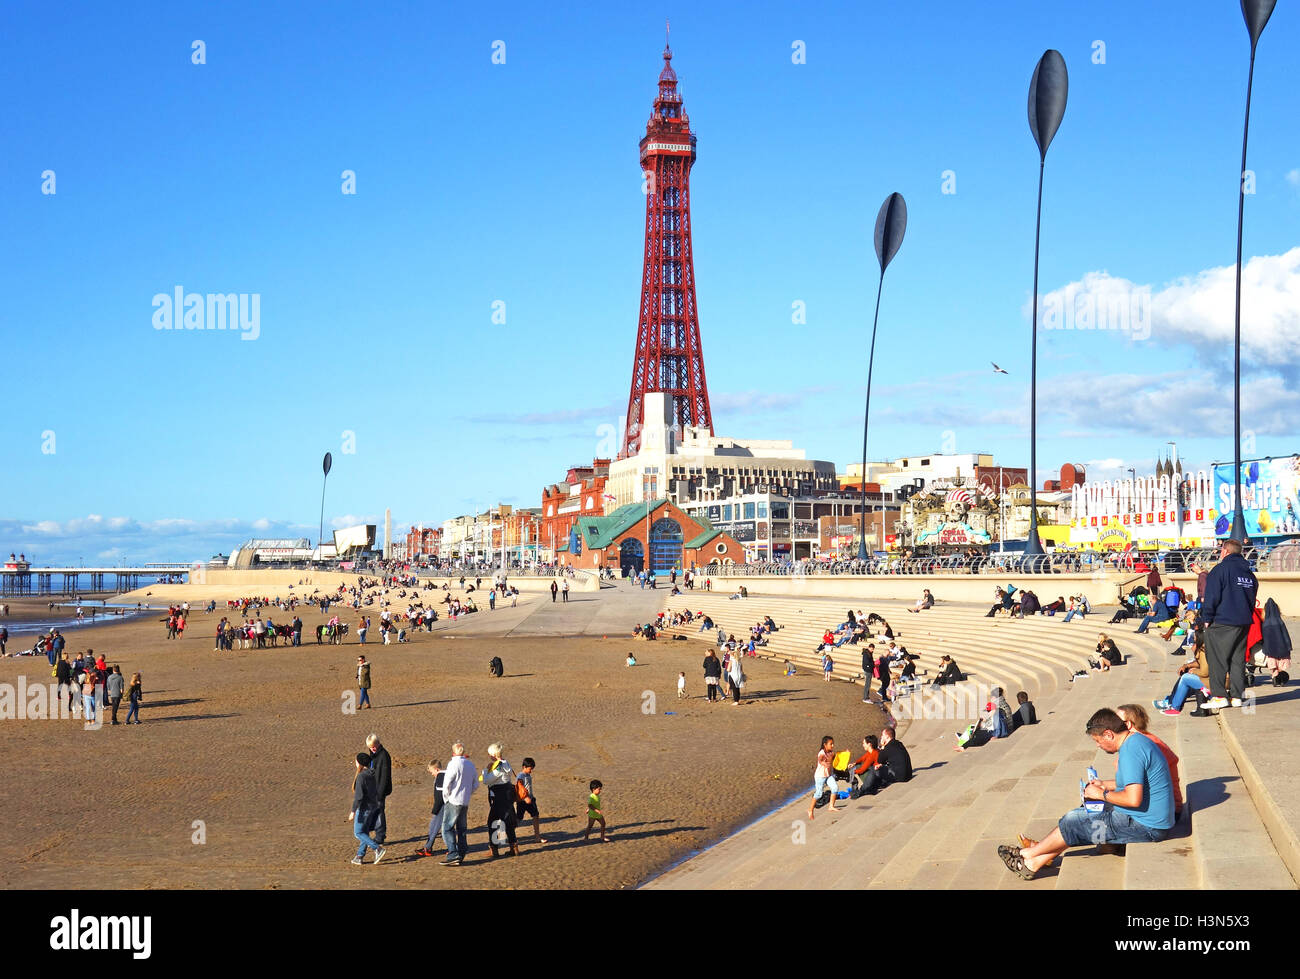 Blackpool, Lancashire, England, UK Stock Photo